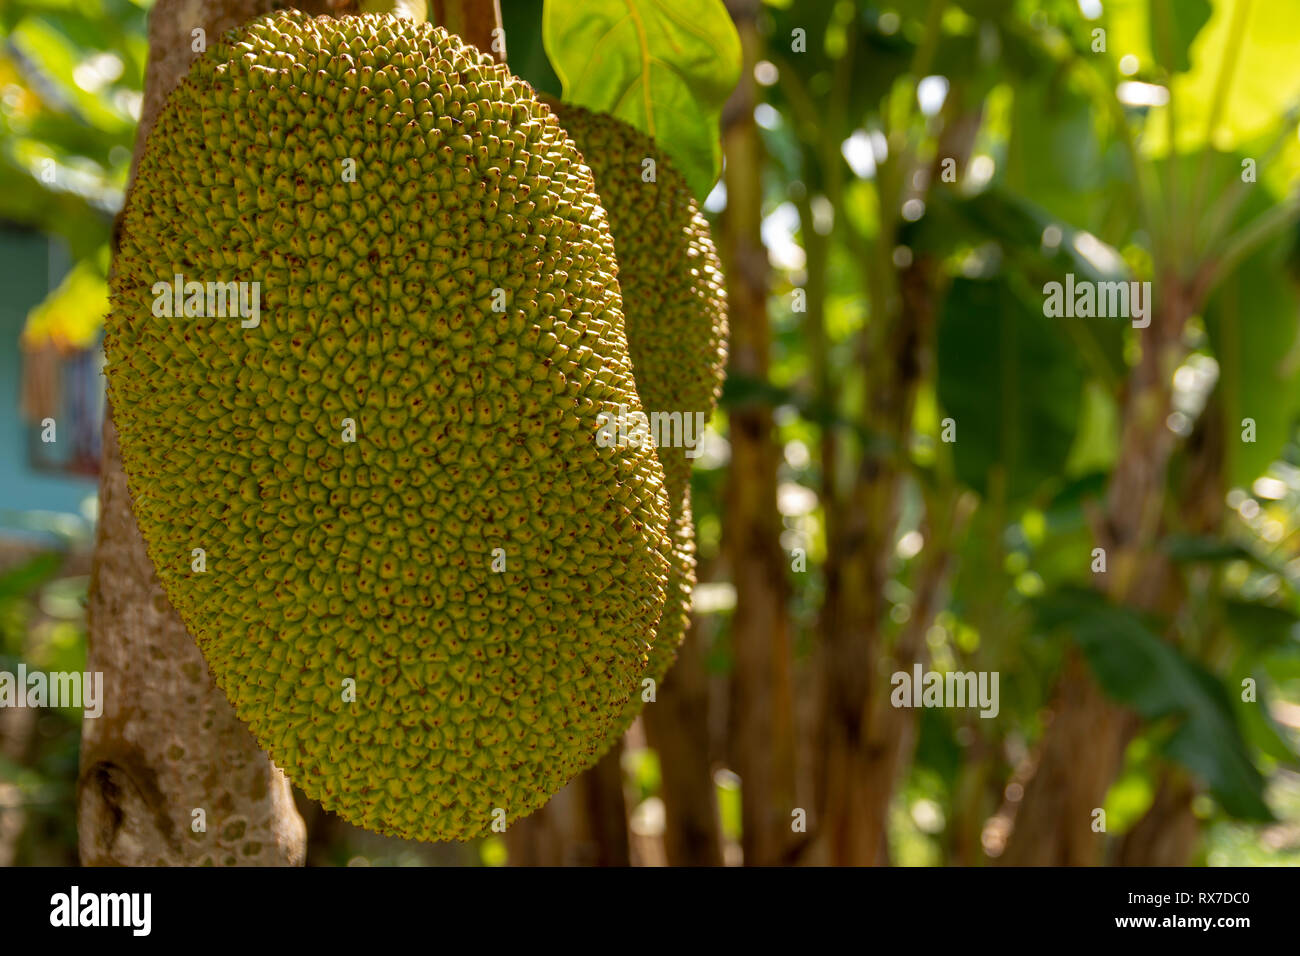 In der Nähe von zwei jackfrüchten in einem Baum, Bild von der Insel Phu Quoc, Vietnam. Stockfoto